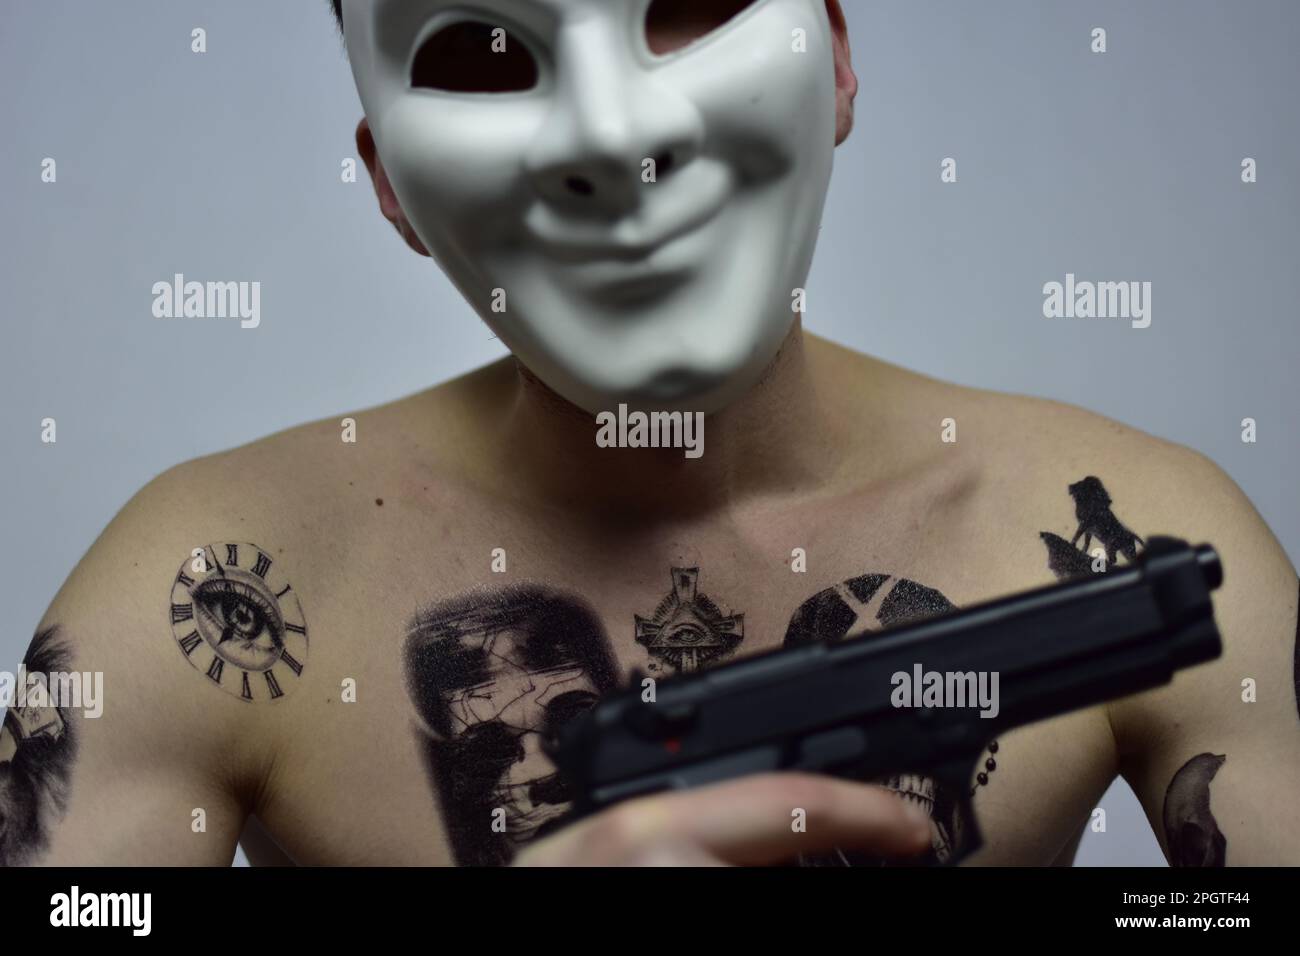 Un homme portant un masque facial, avec de nombreux tatouages visibles, tenant un fusil dans un geste menaçant Banque D'Images